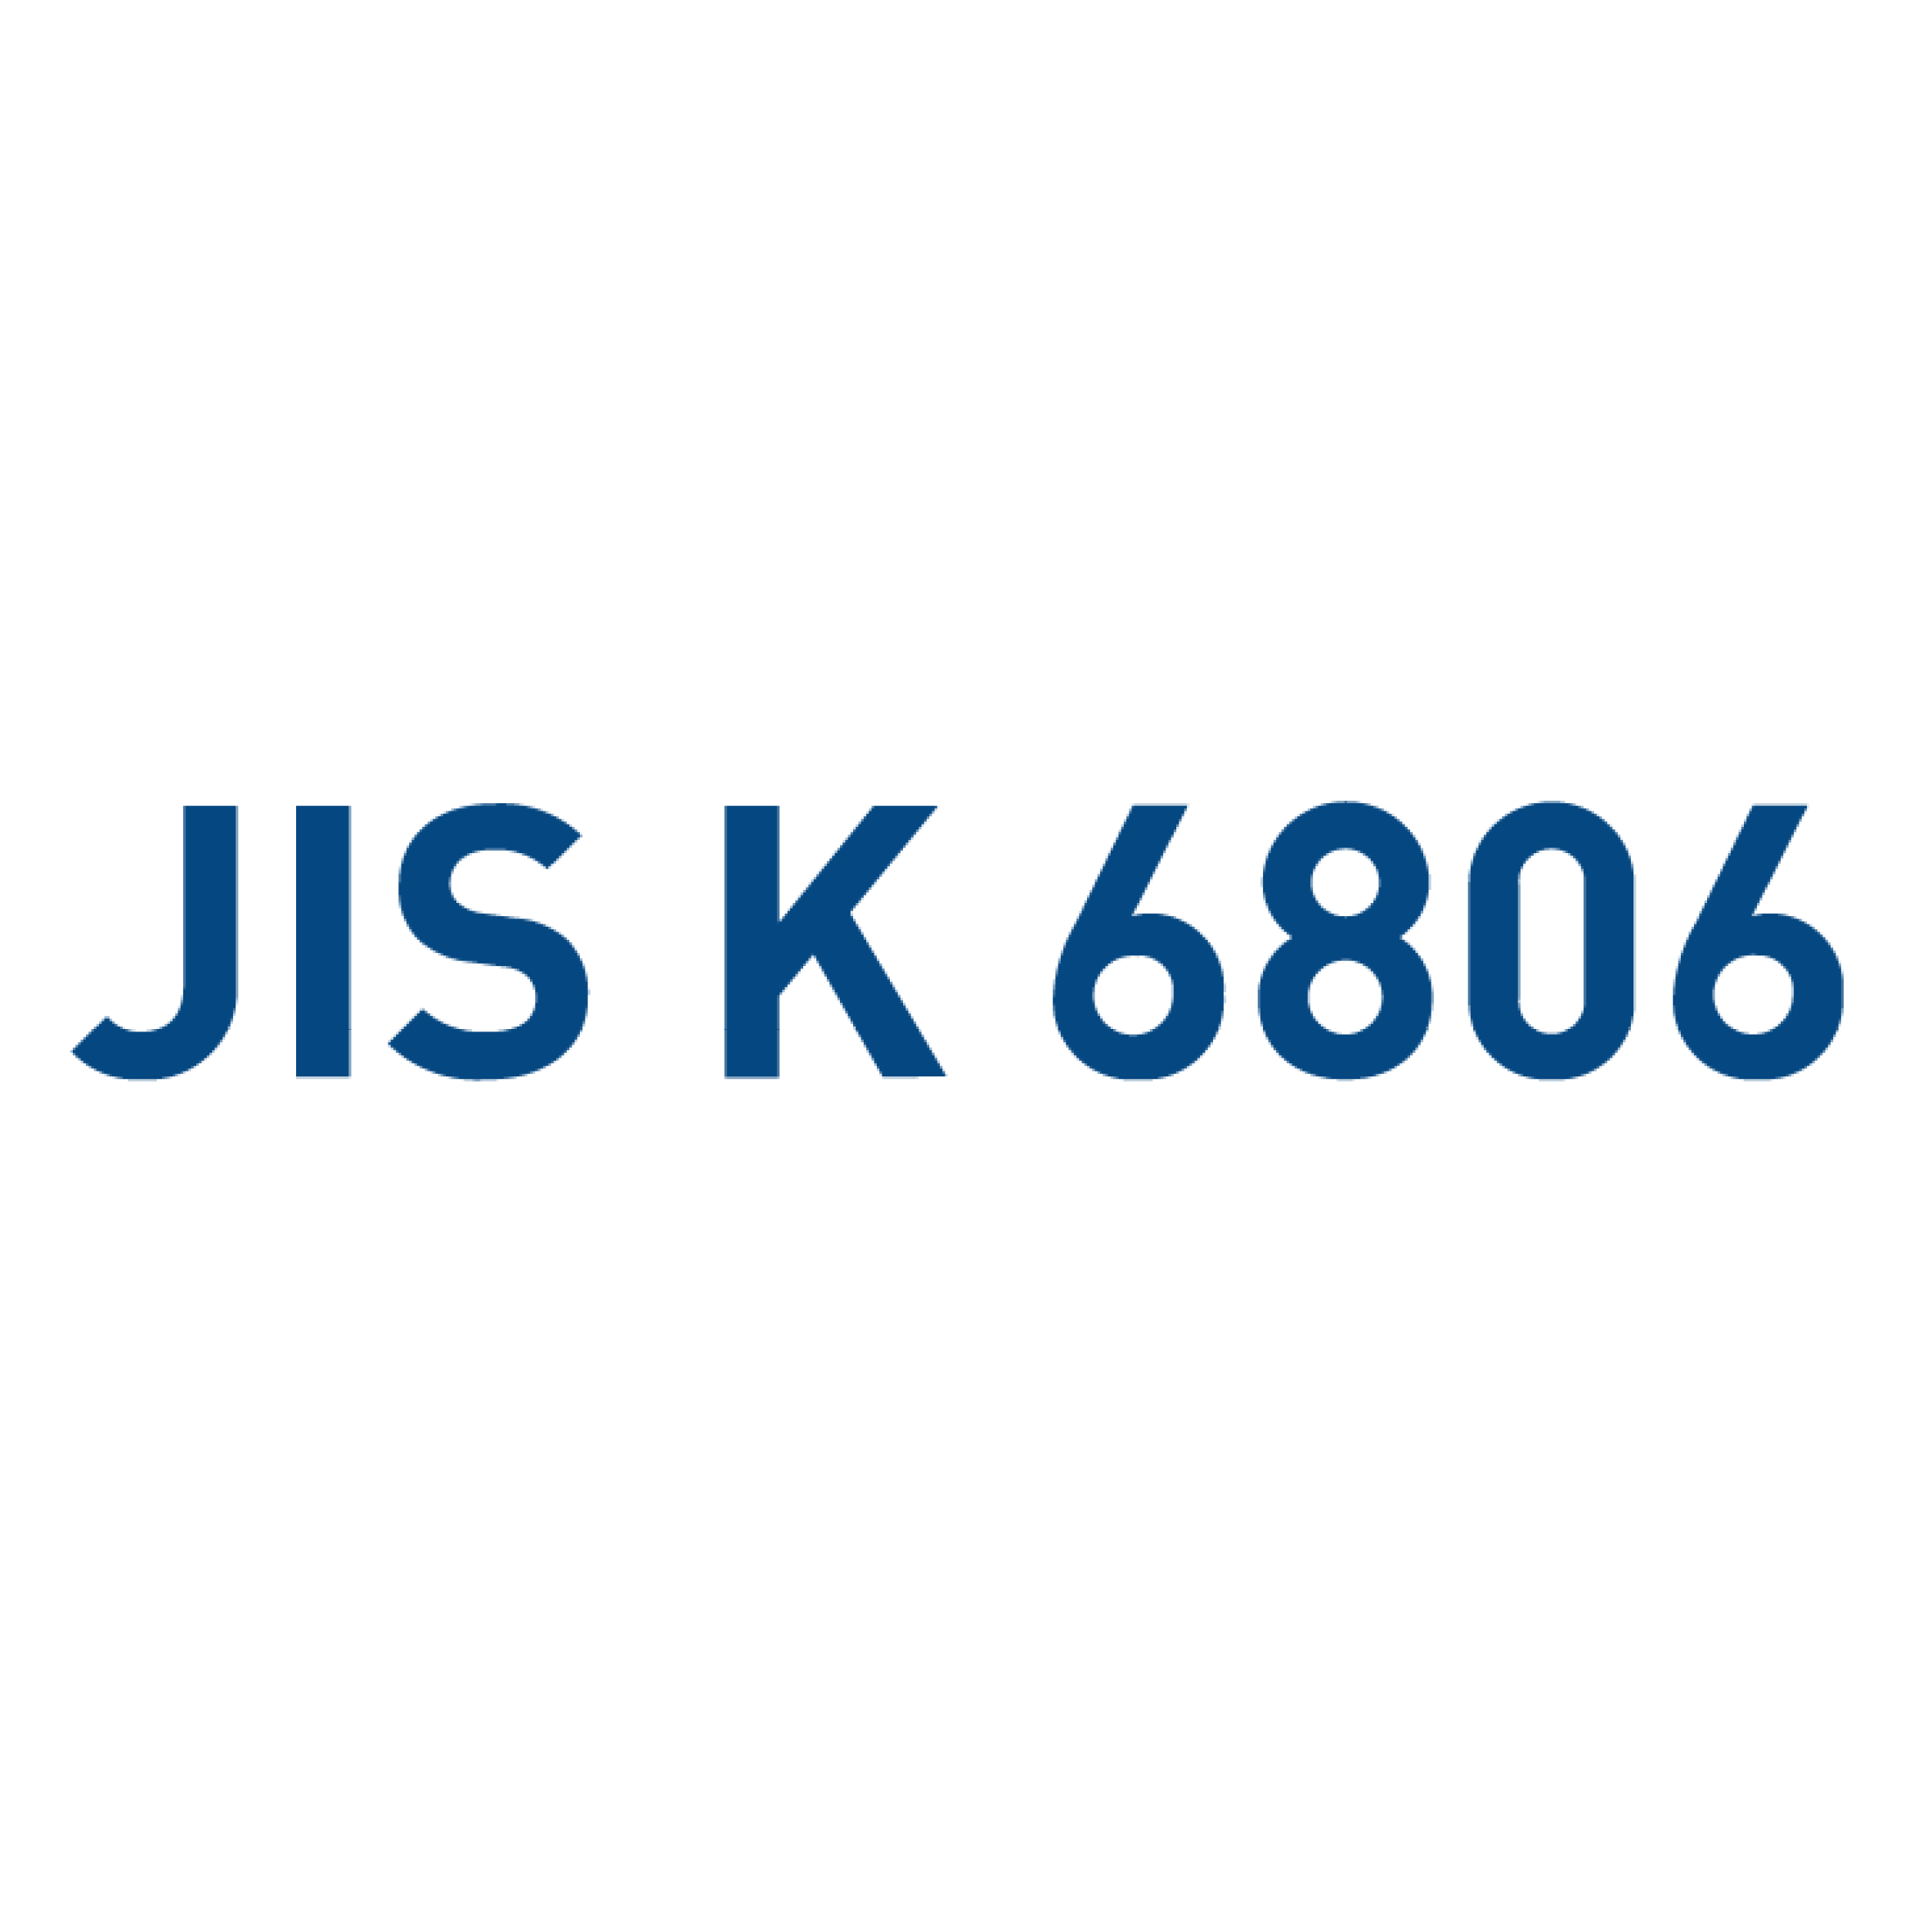 JIS K 6806